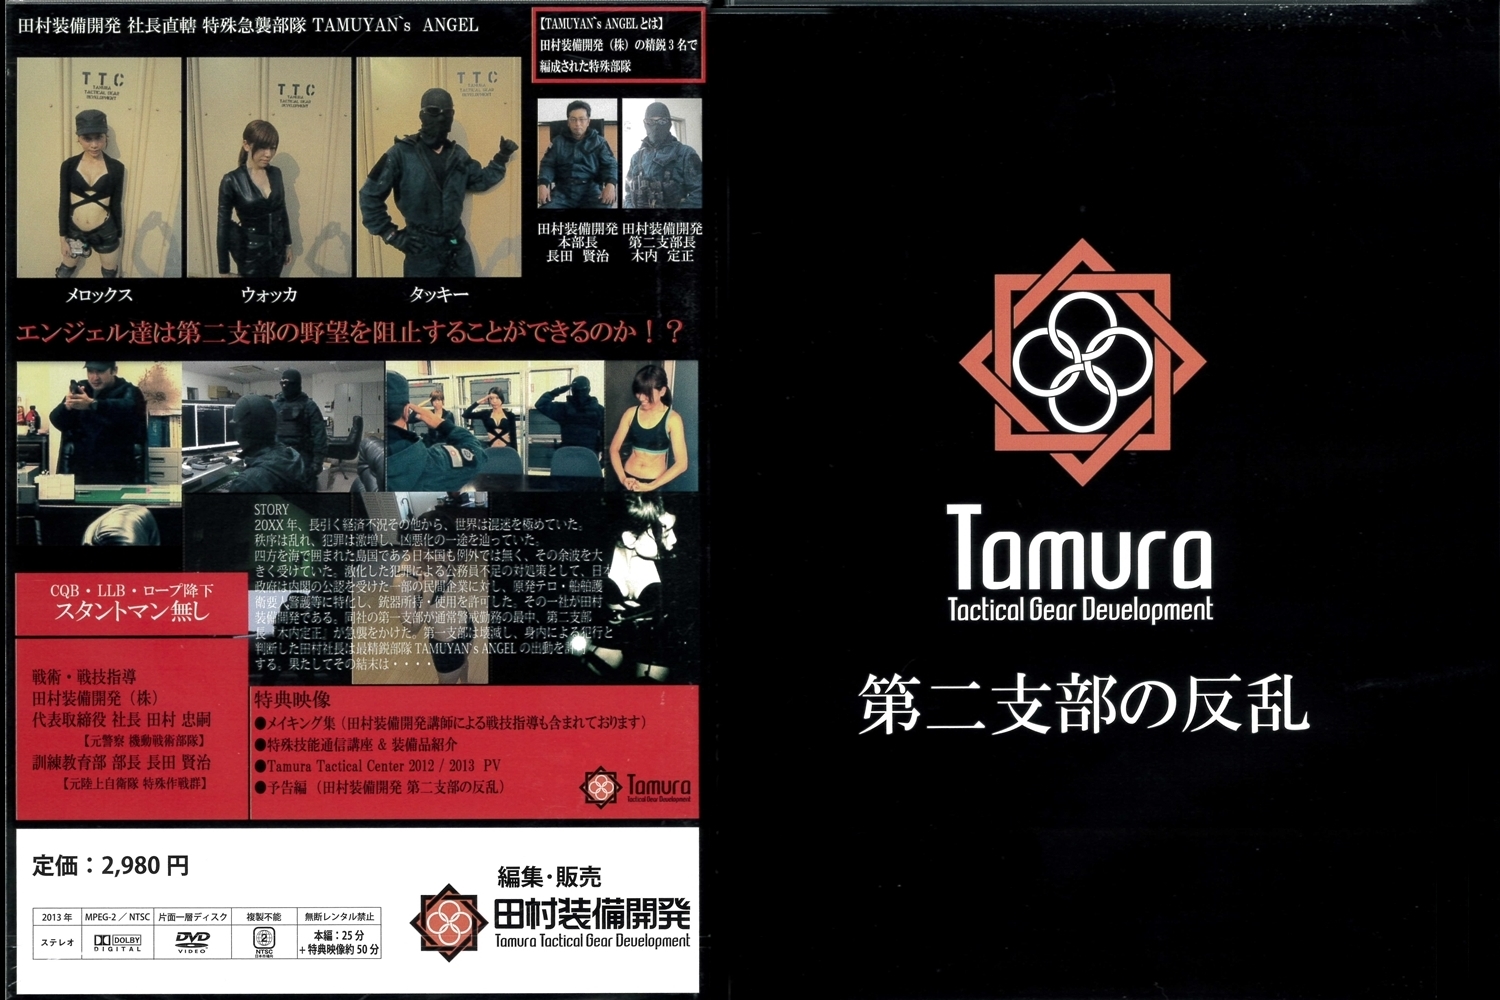 DVD「田村装備開発株式会社第二支部の反乱」 tam-dvd01